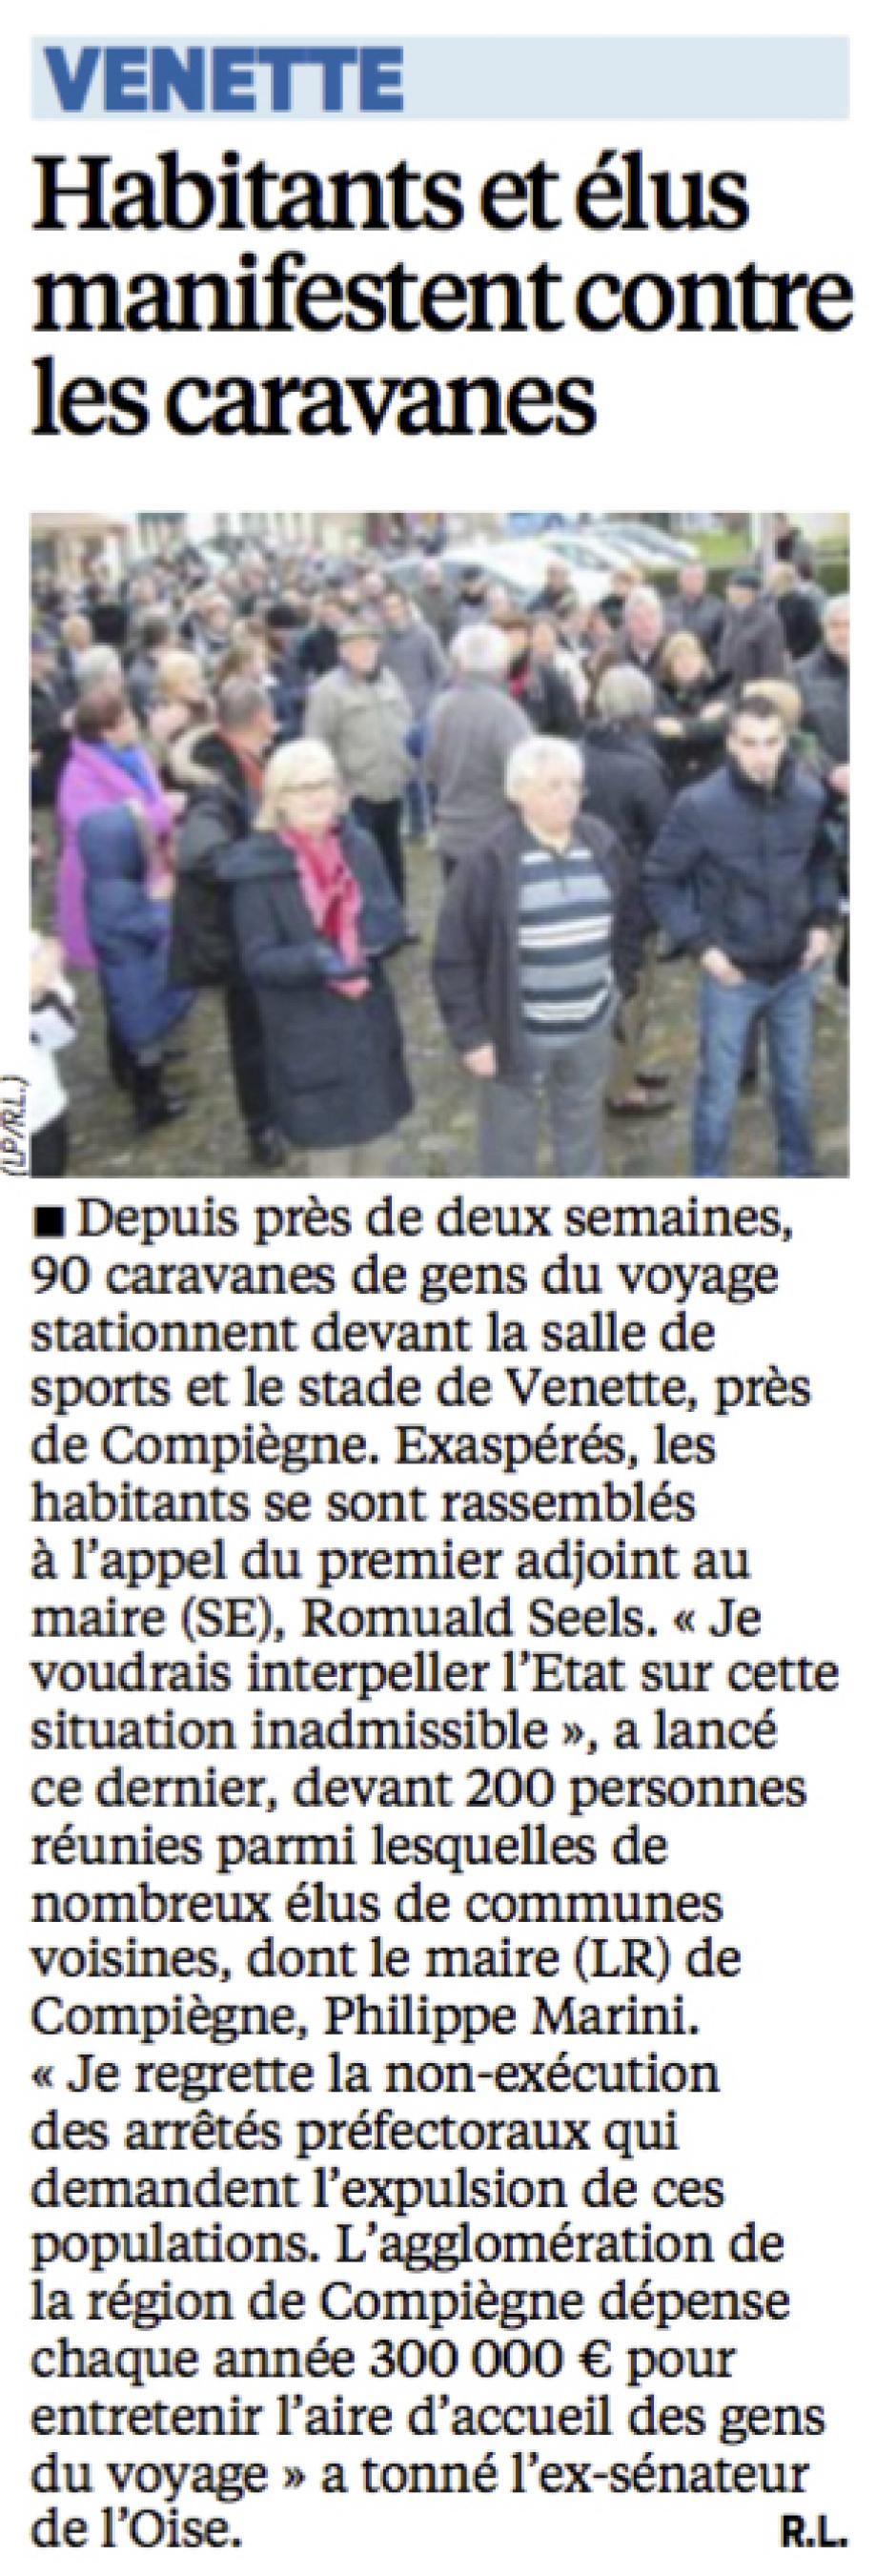 20151213-LeP-Venette-Habitants et élus manifestent contre les caravanes